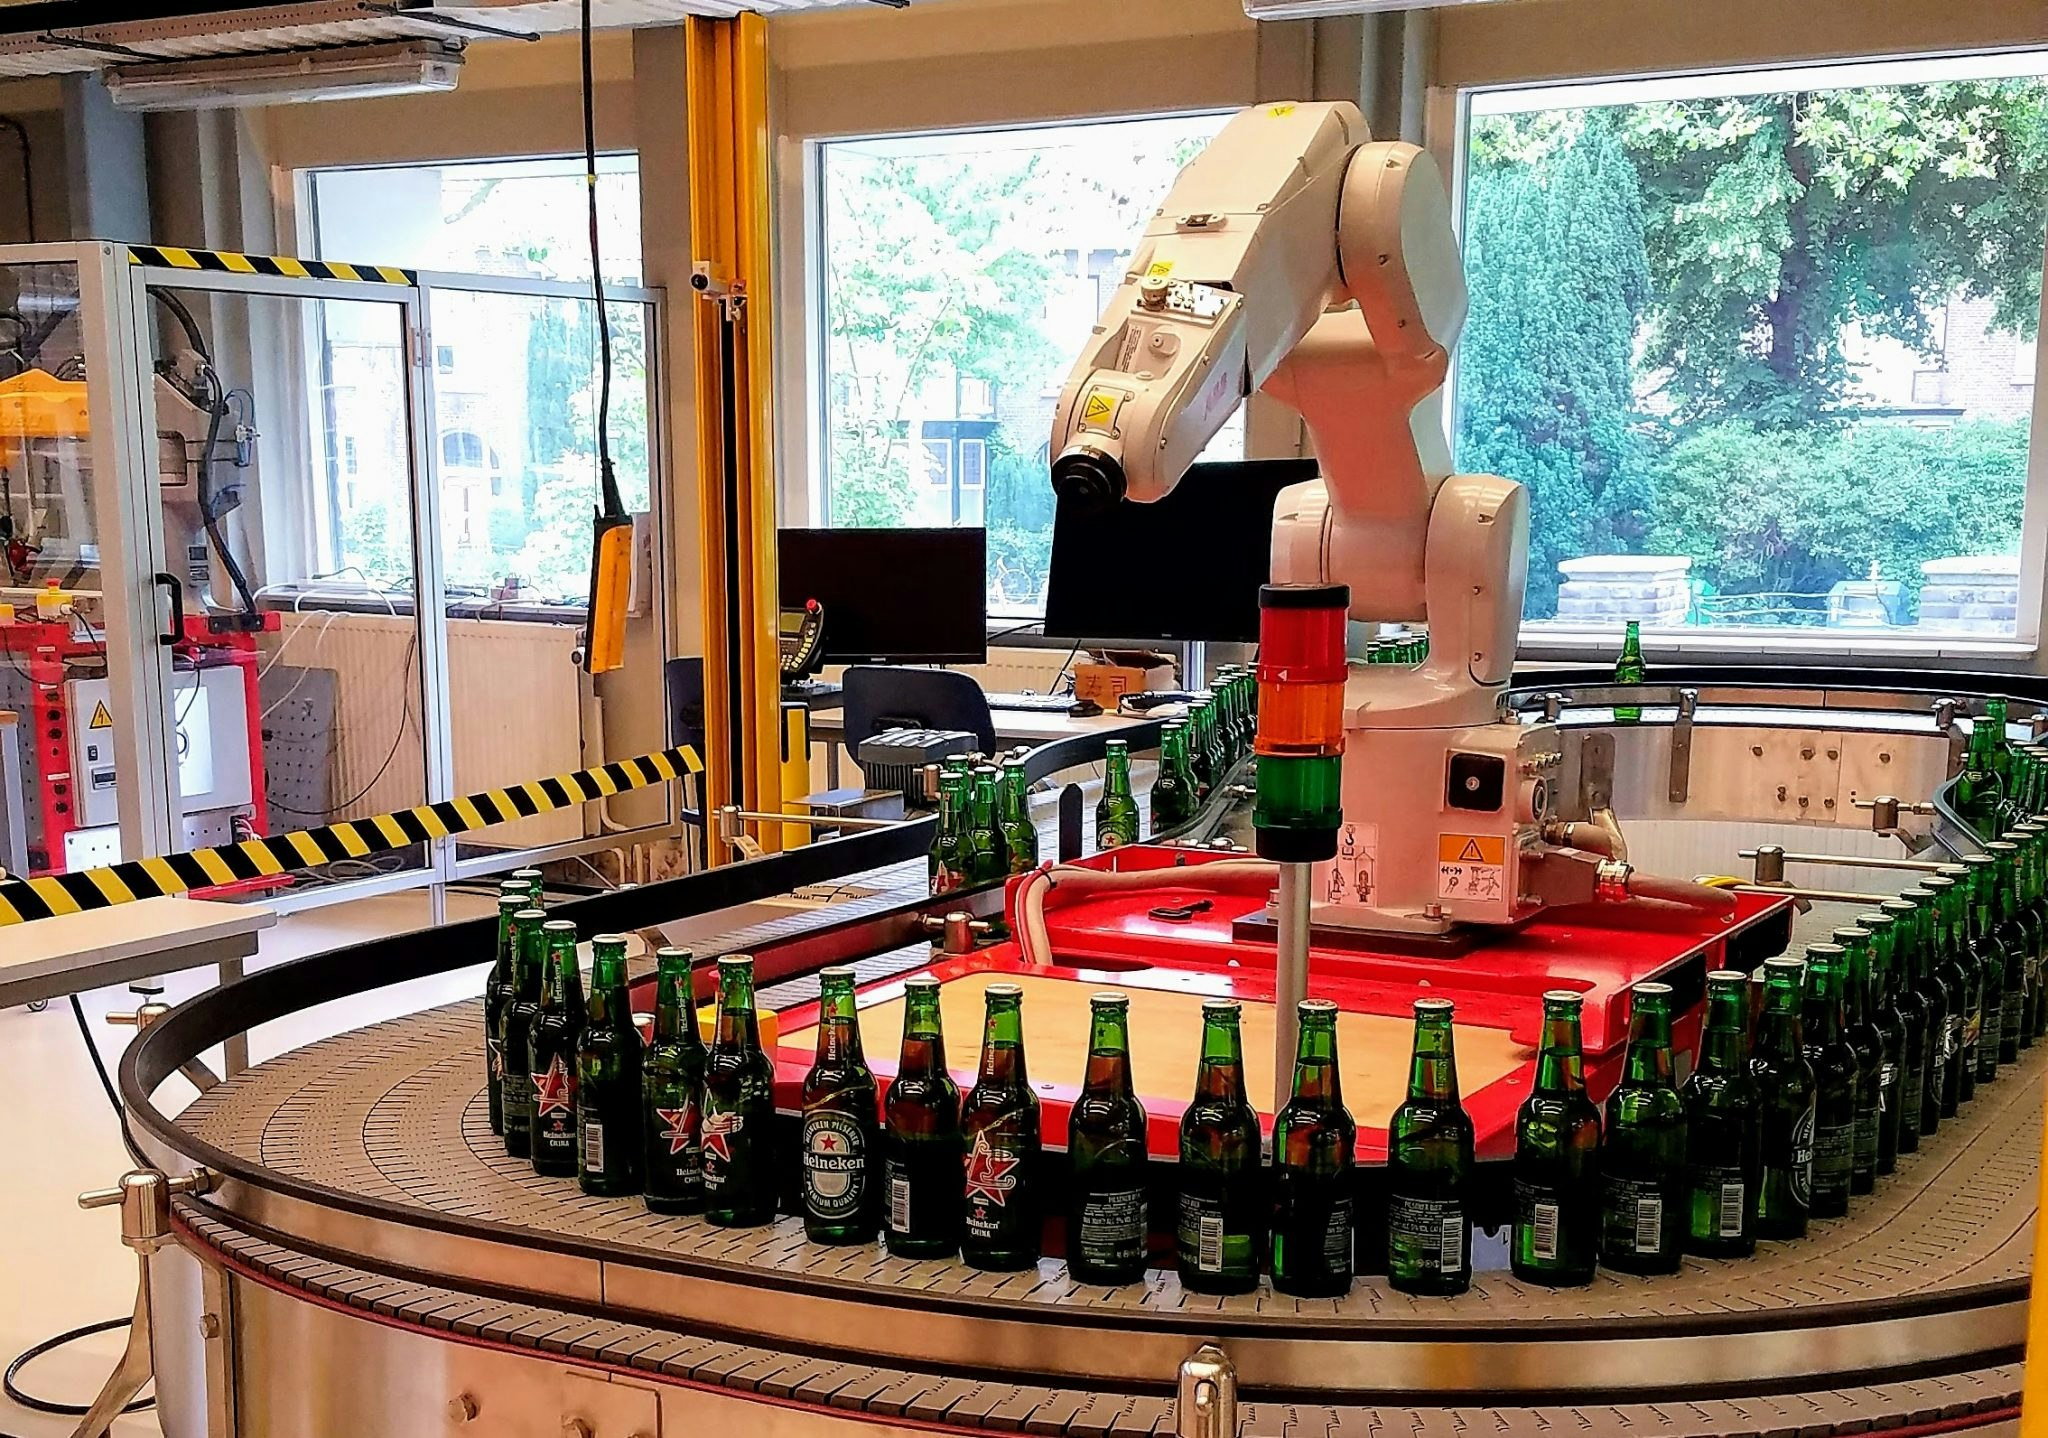 Heineken robot that helps pick up fallen bottles